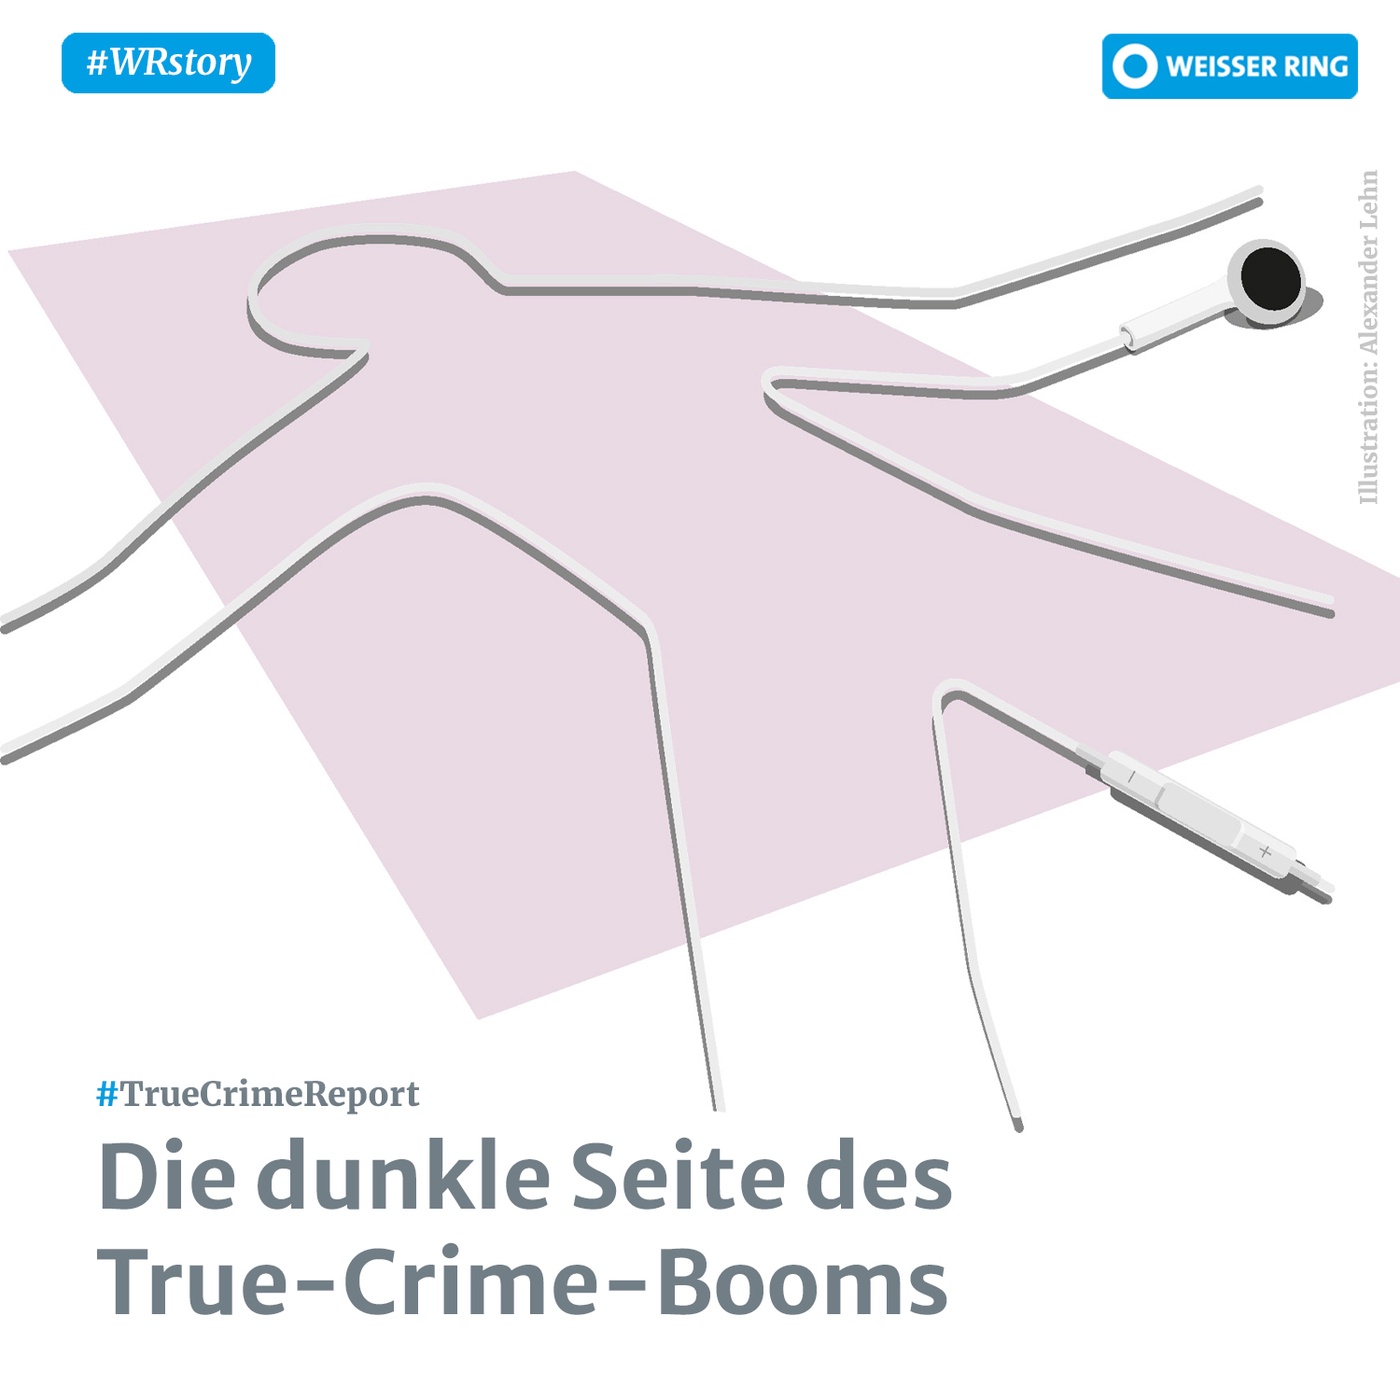 Die dunkle Seite des True-Crime-Booms